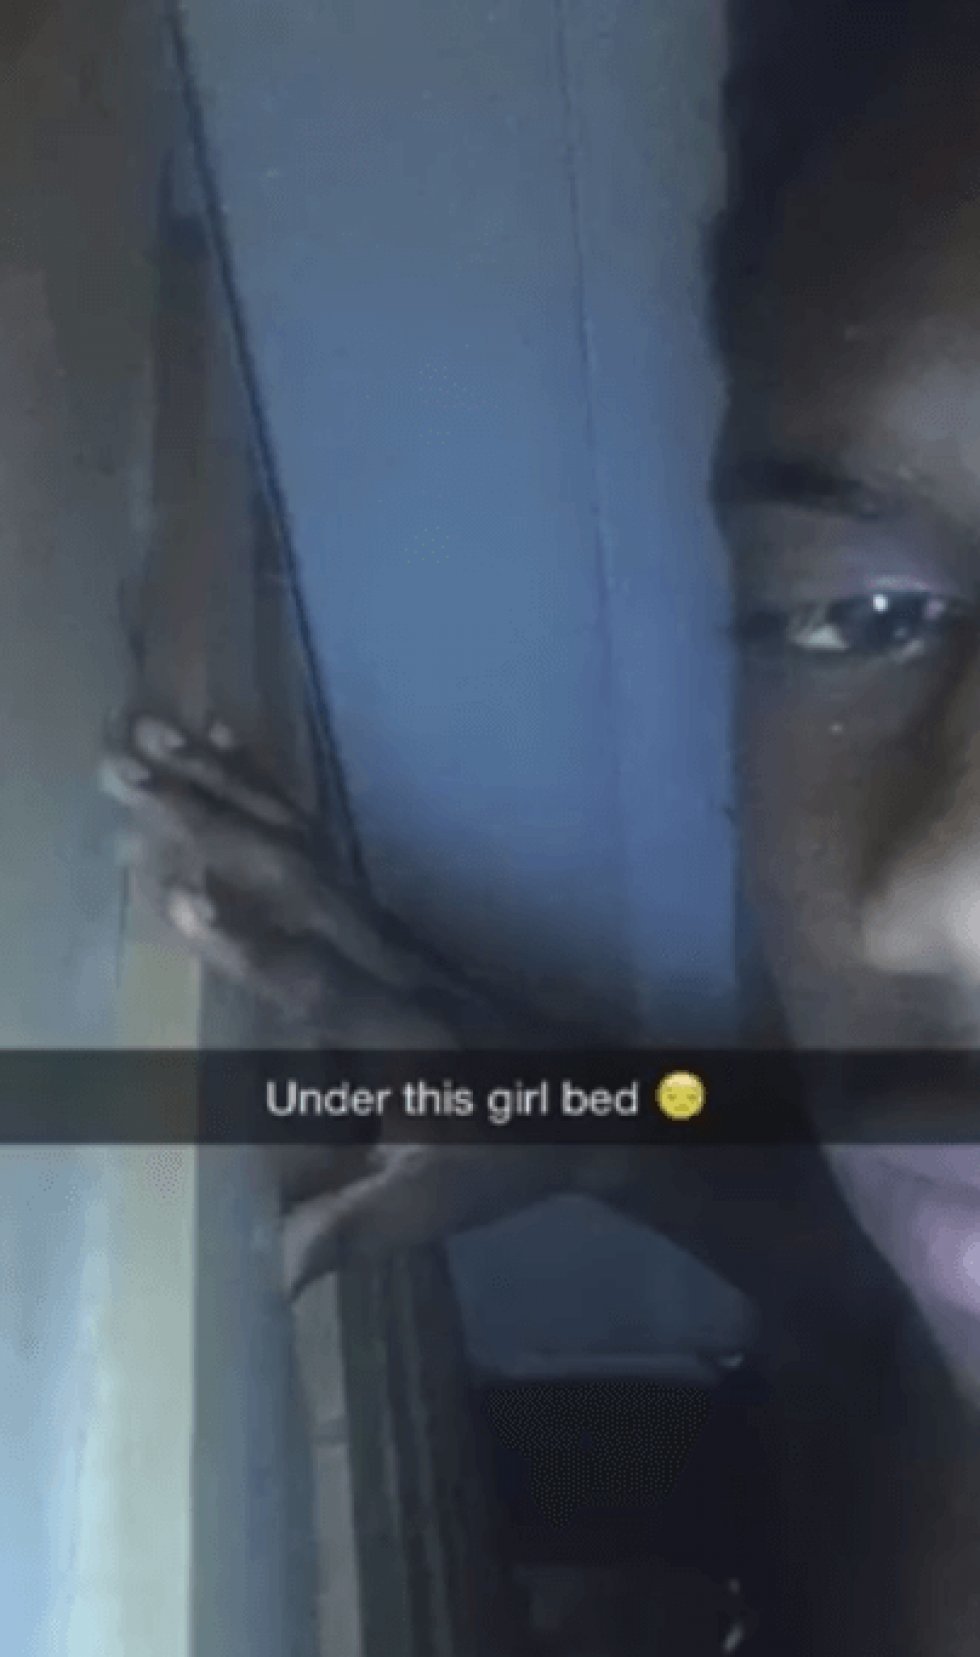 Uheldig fyr fanges under sin kærestes seng, da svigermor kommer hjem